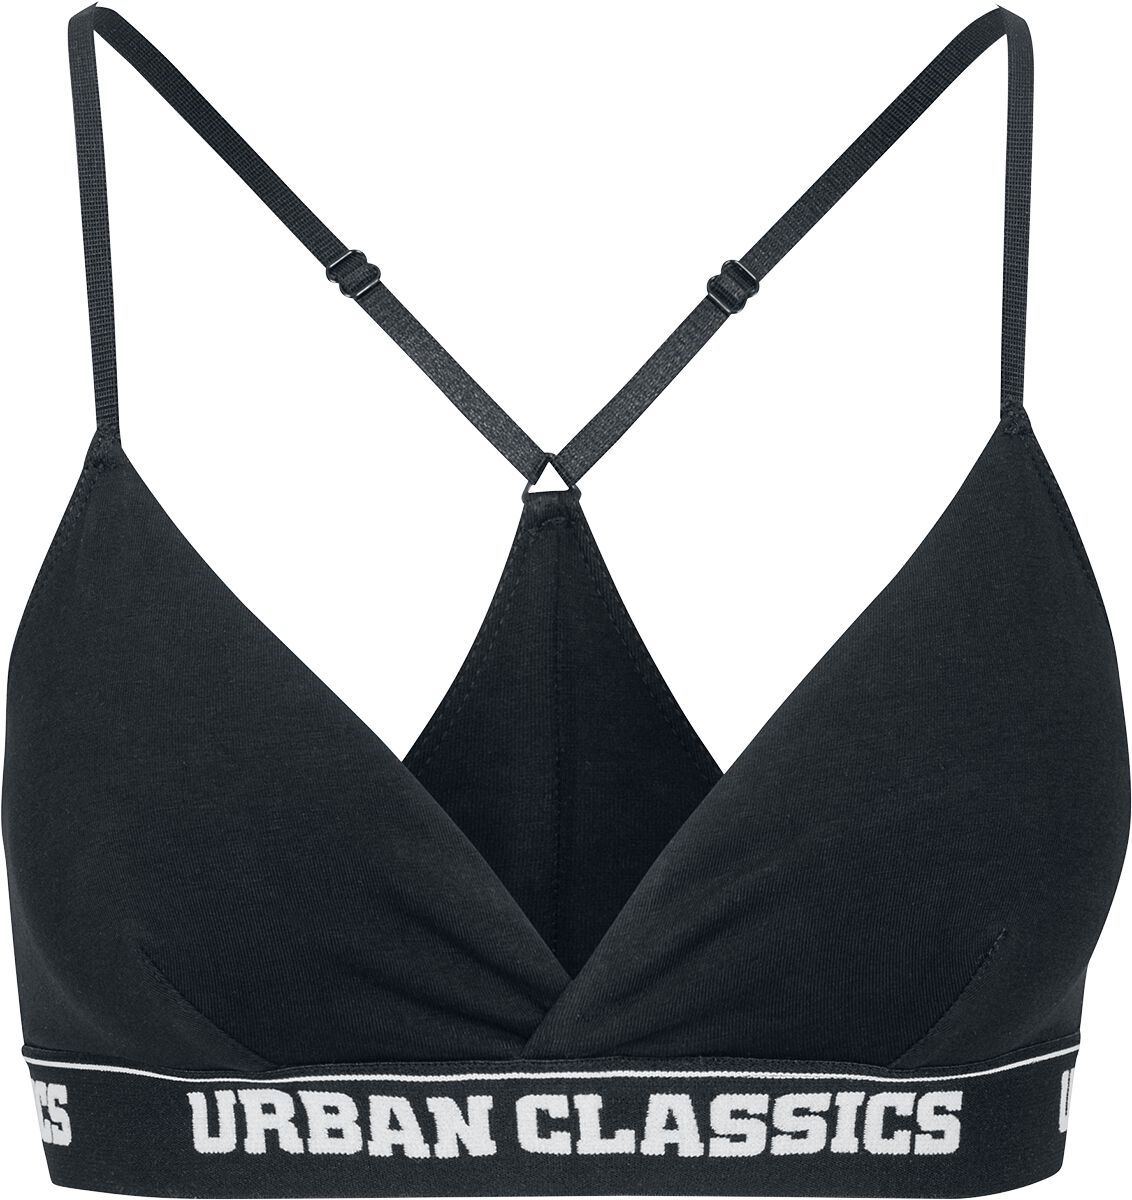 Urban Classics Ladies Triangle Logo Bra Bustier schwarz in S